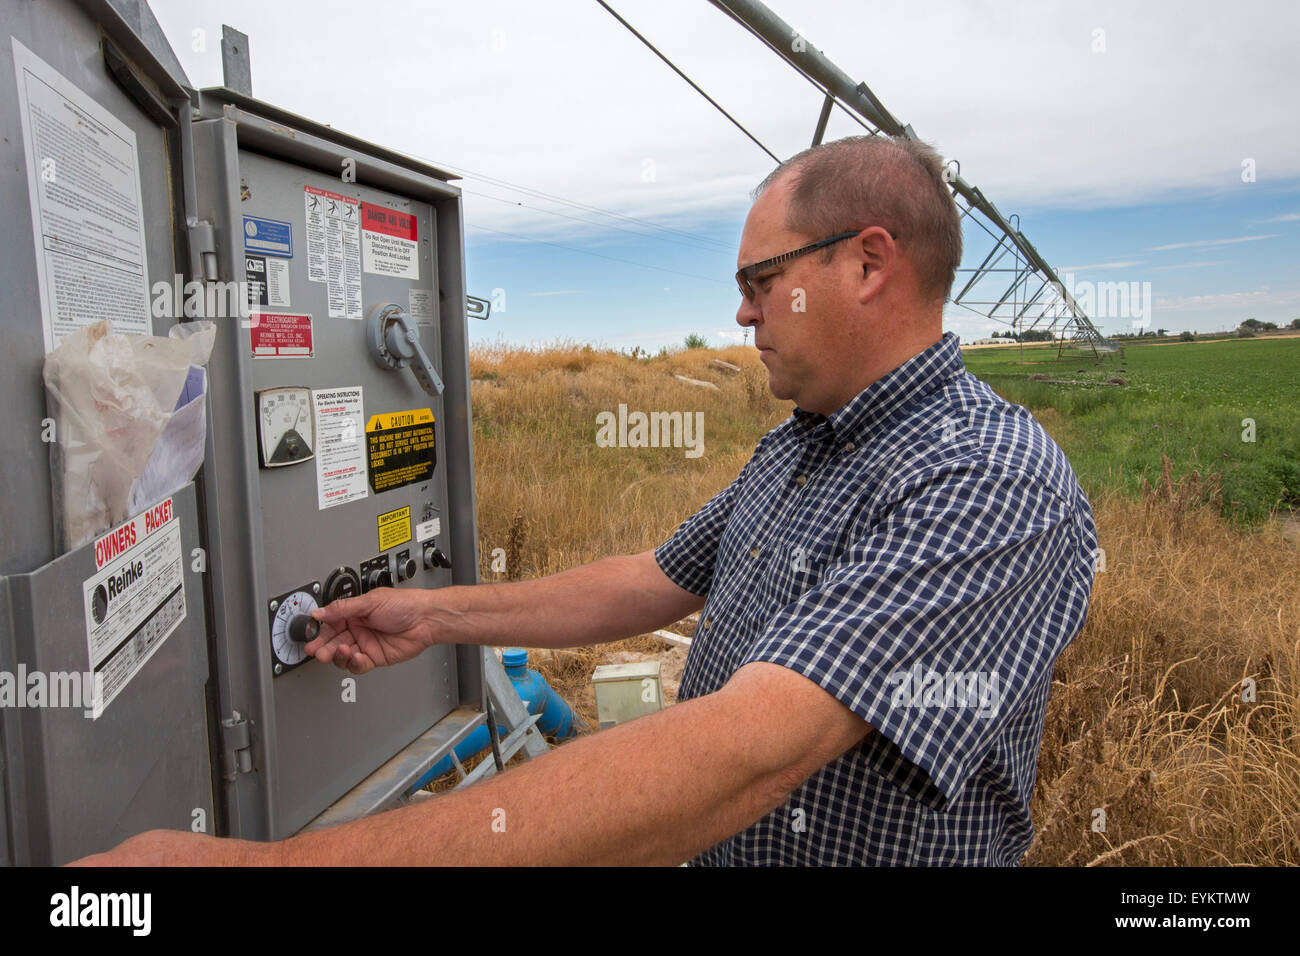 Shelley, Idaho - Idaho Kartoffel Landwirt Bryan Searle passt die Steuerelemente für eine Central Pivot-Bewässerungs-System auf seiner Farm. Stockfoto